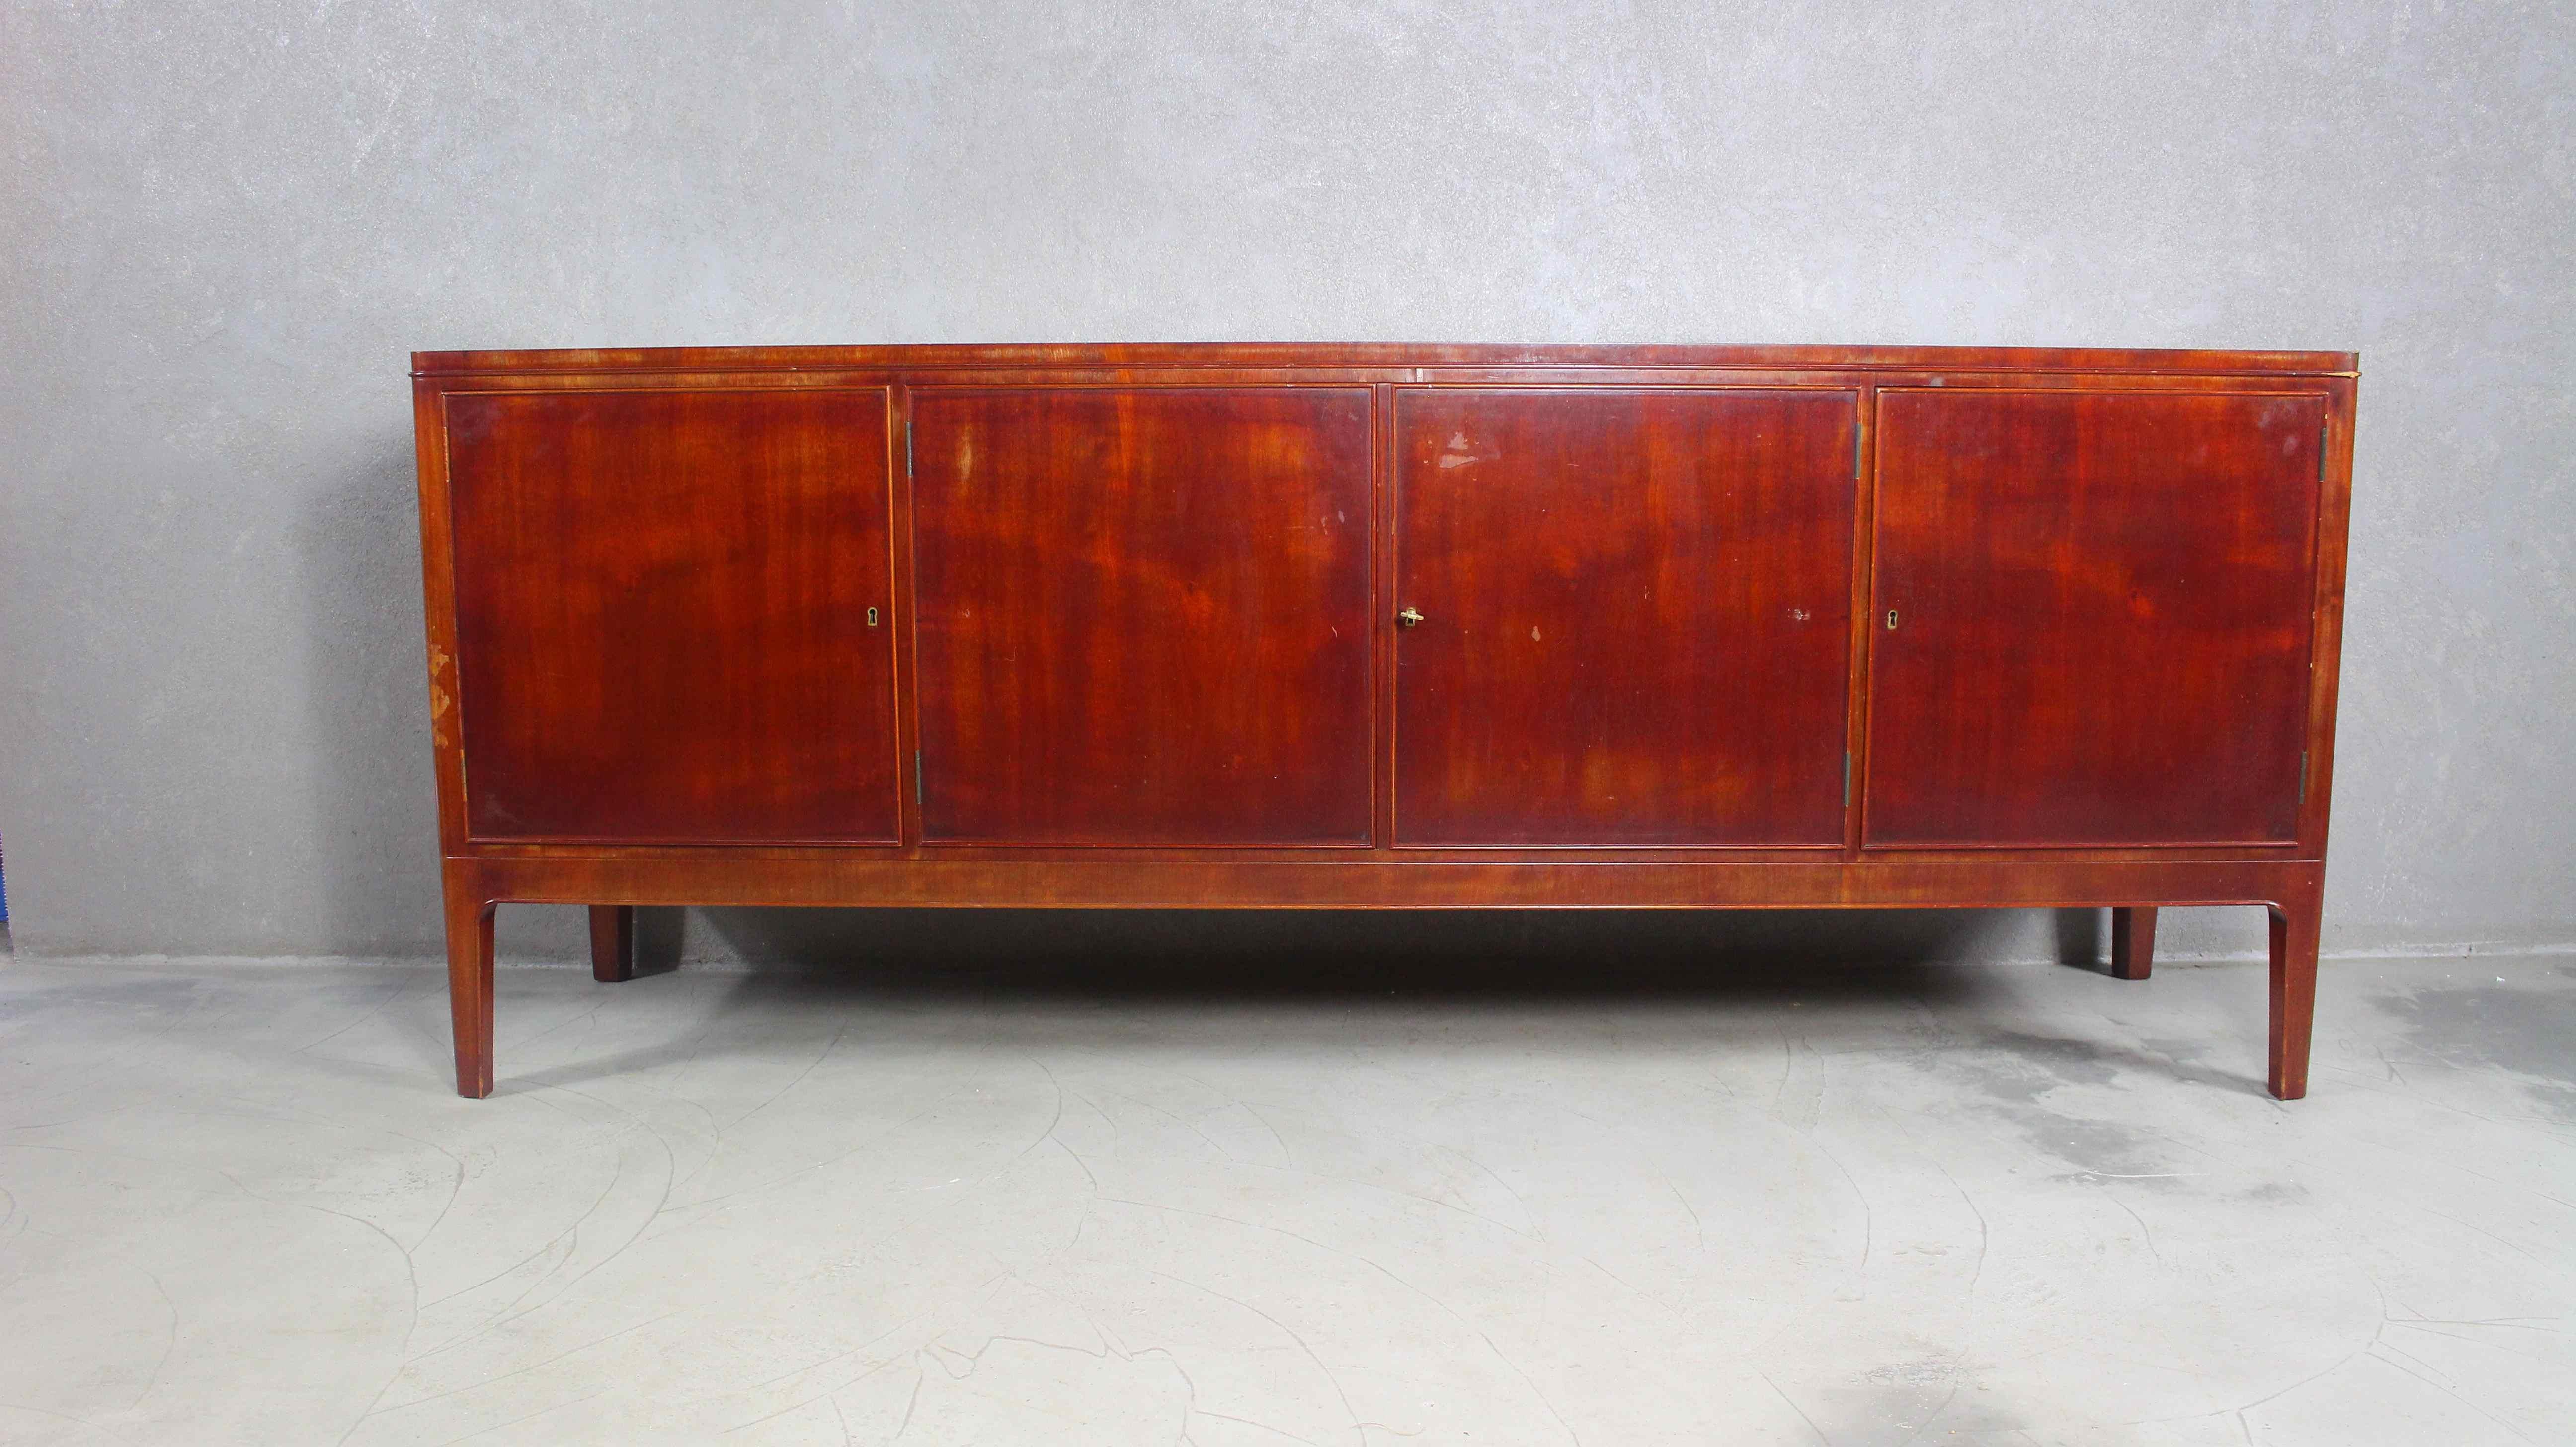 Sidebord danois en acajou des années 1940.
Un meuble long et massif avec 3 étagères ouvrantes.
Fabriqué au Danemark dans les années 1940.
Fabriqué par CB Hansens.